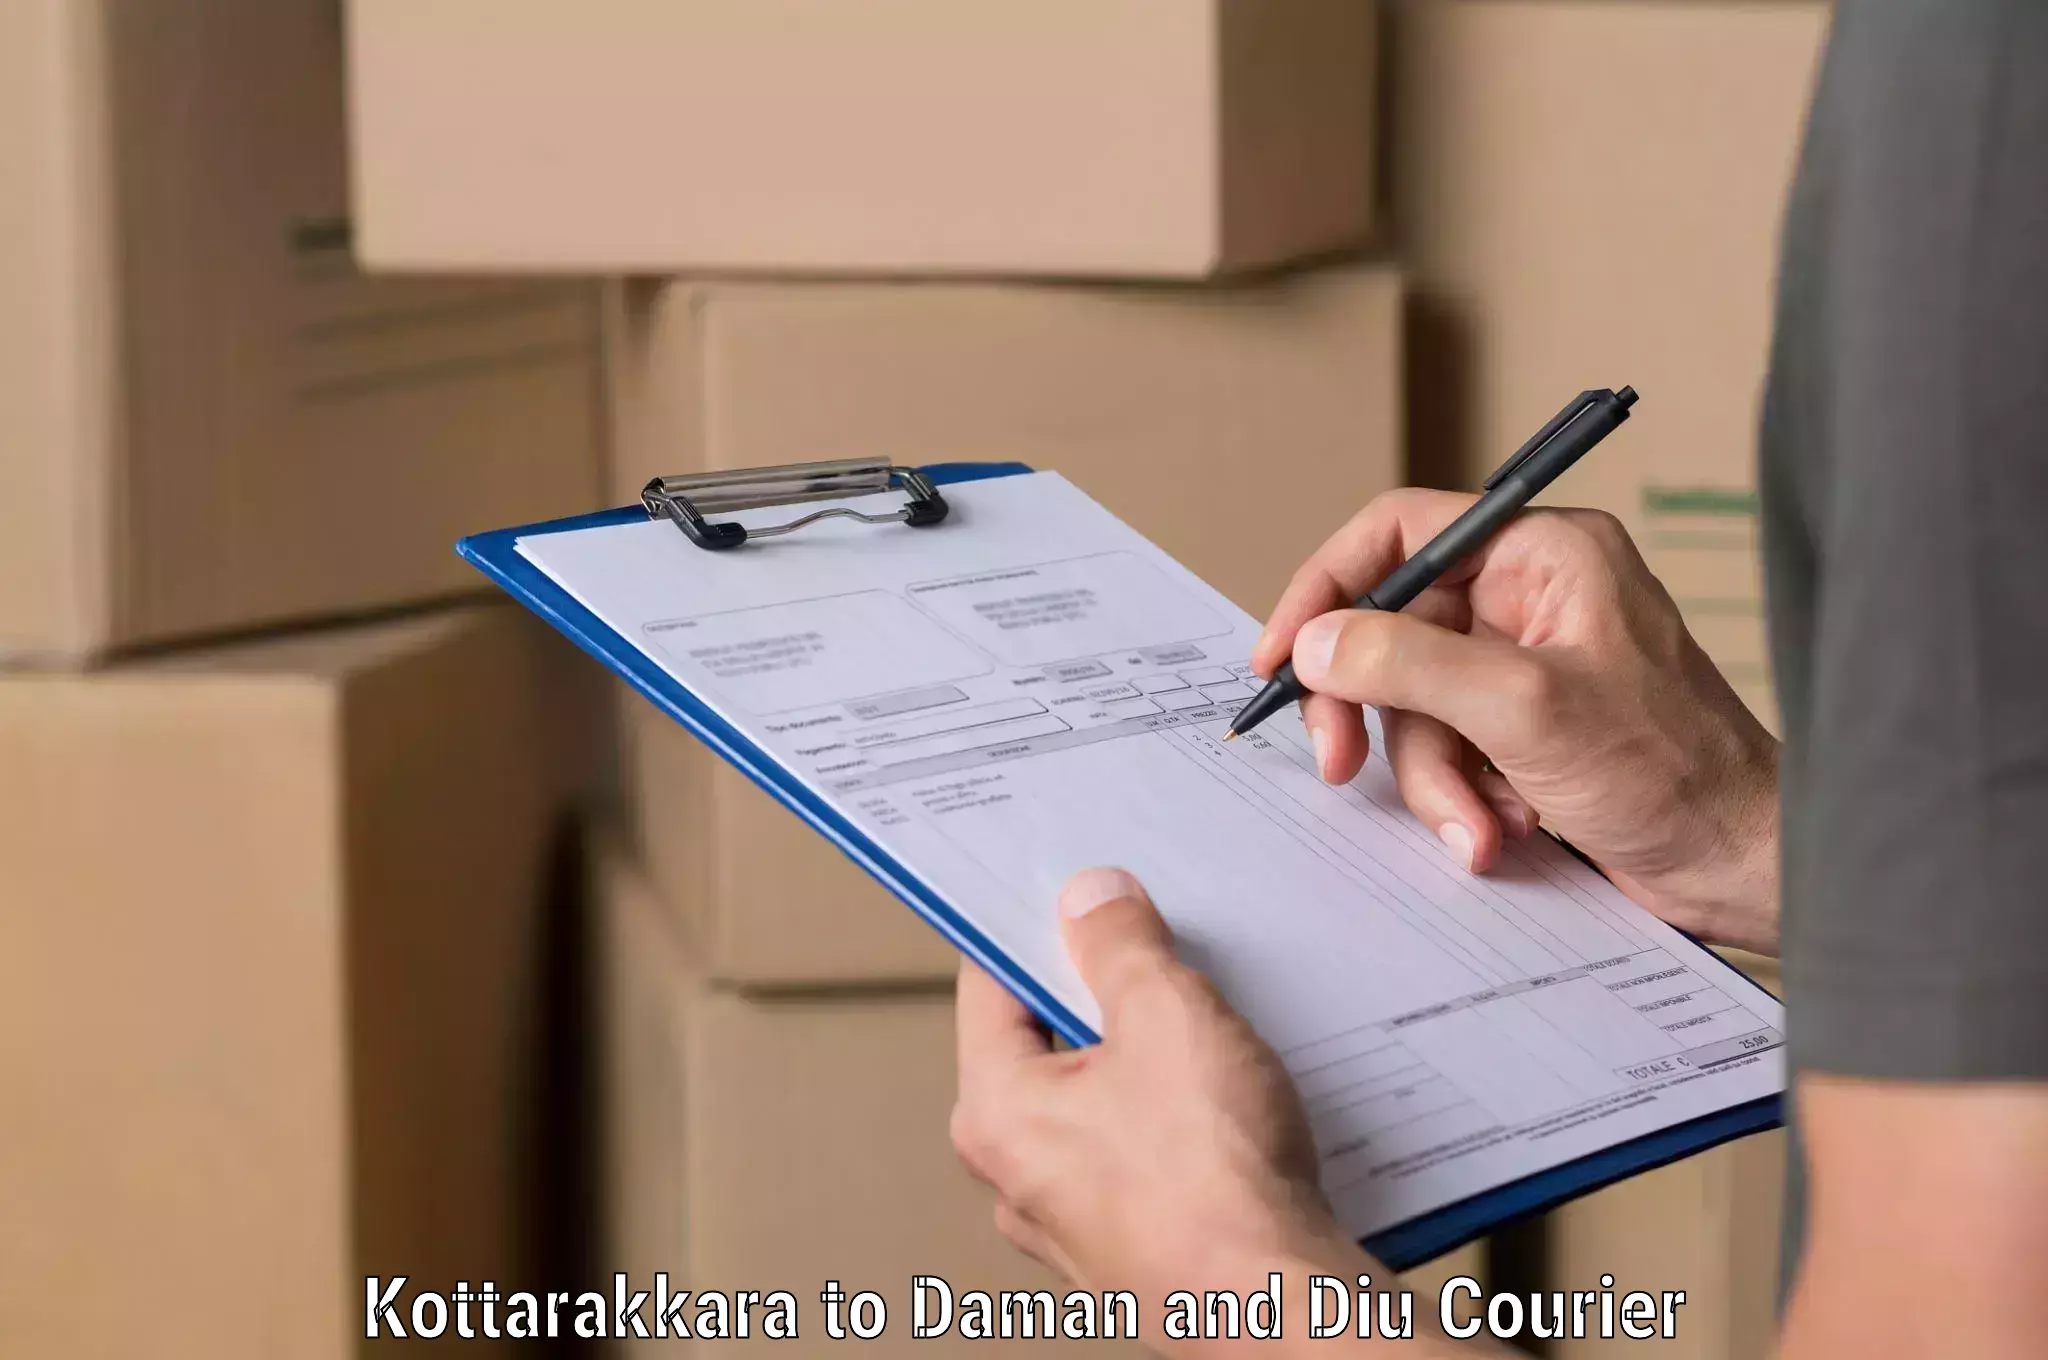 Nationwide parcel services Kottarakkara to Daman and Diu